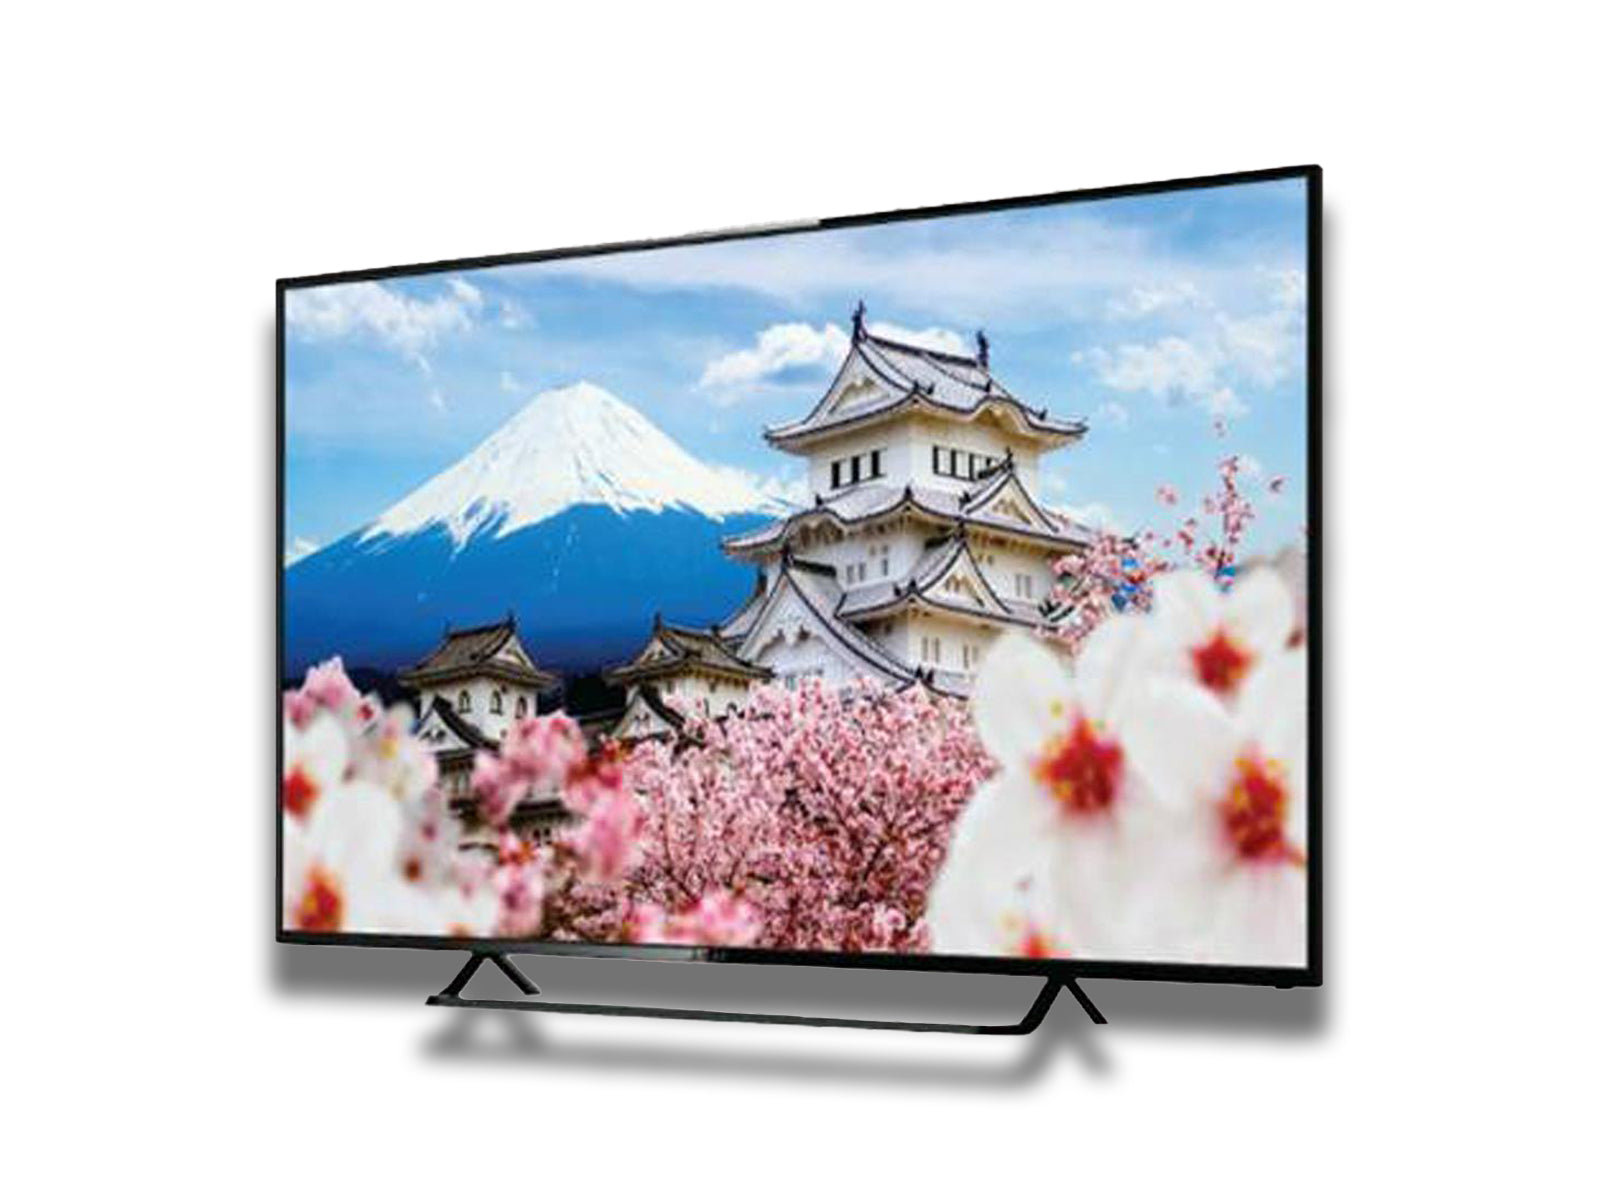 Akai Smart Tv 55 inch